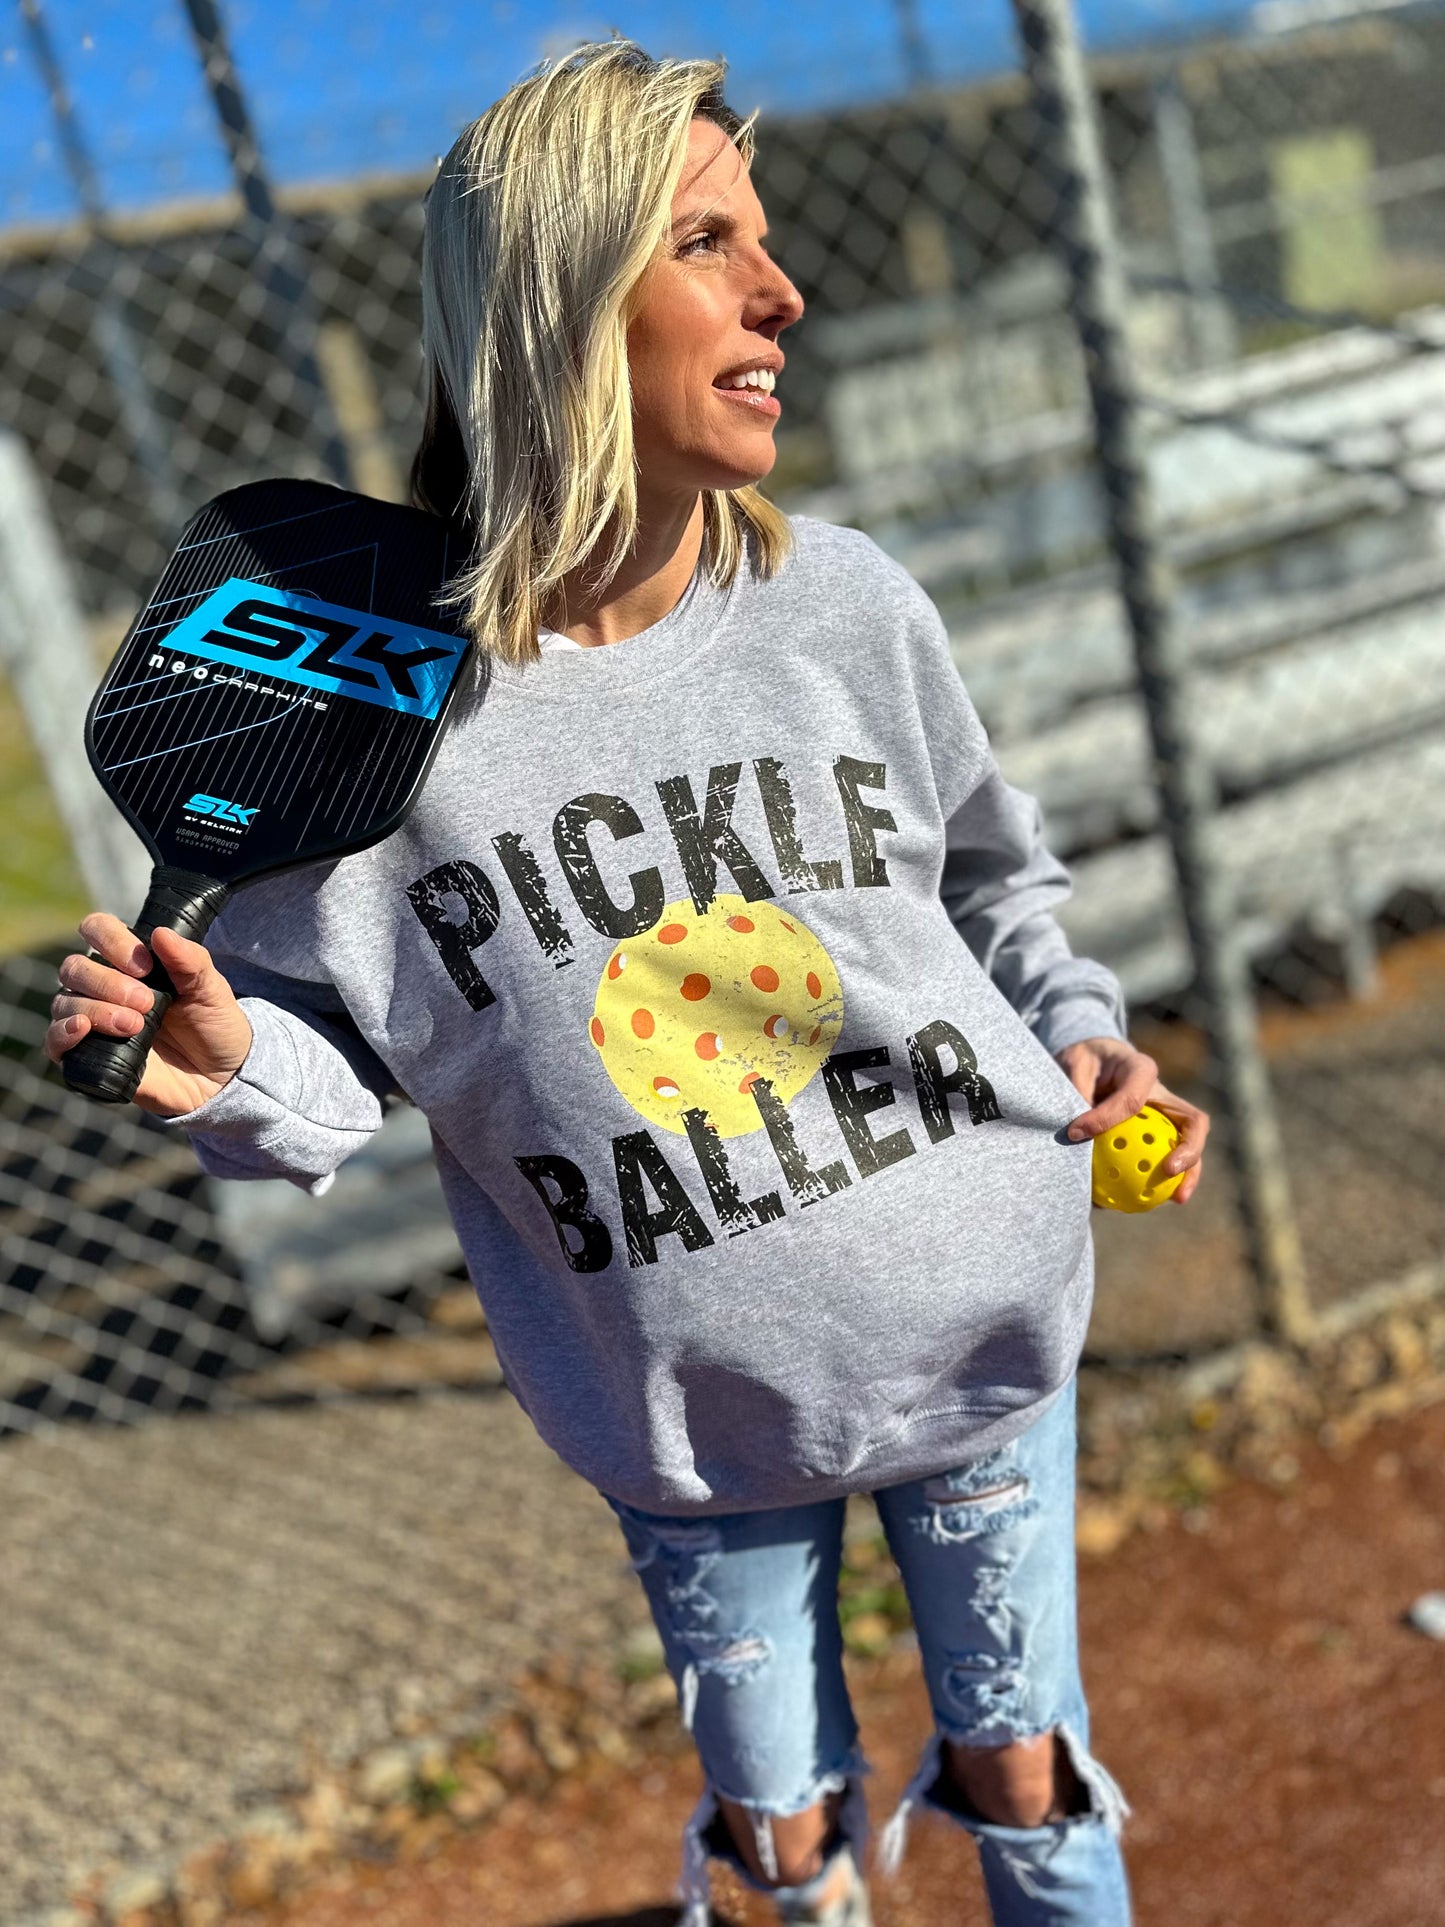 Pickle baller